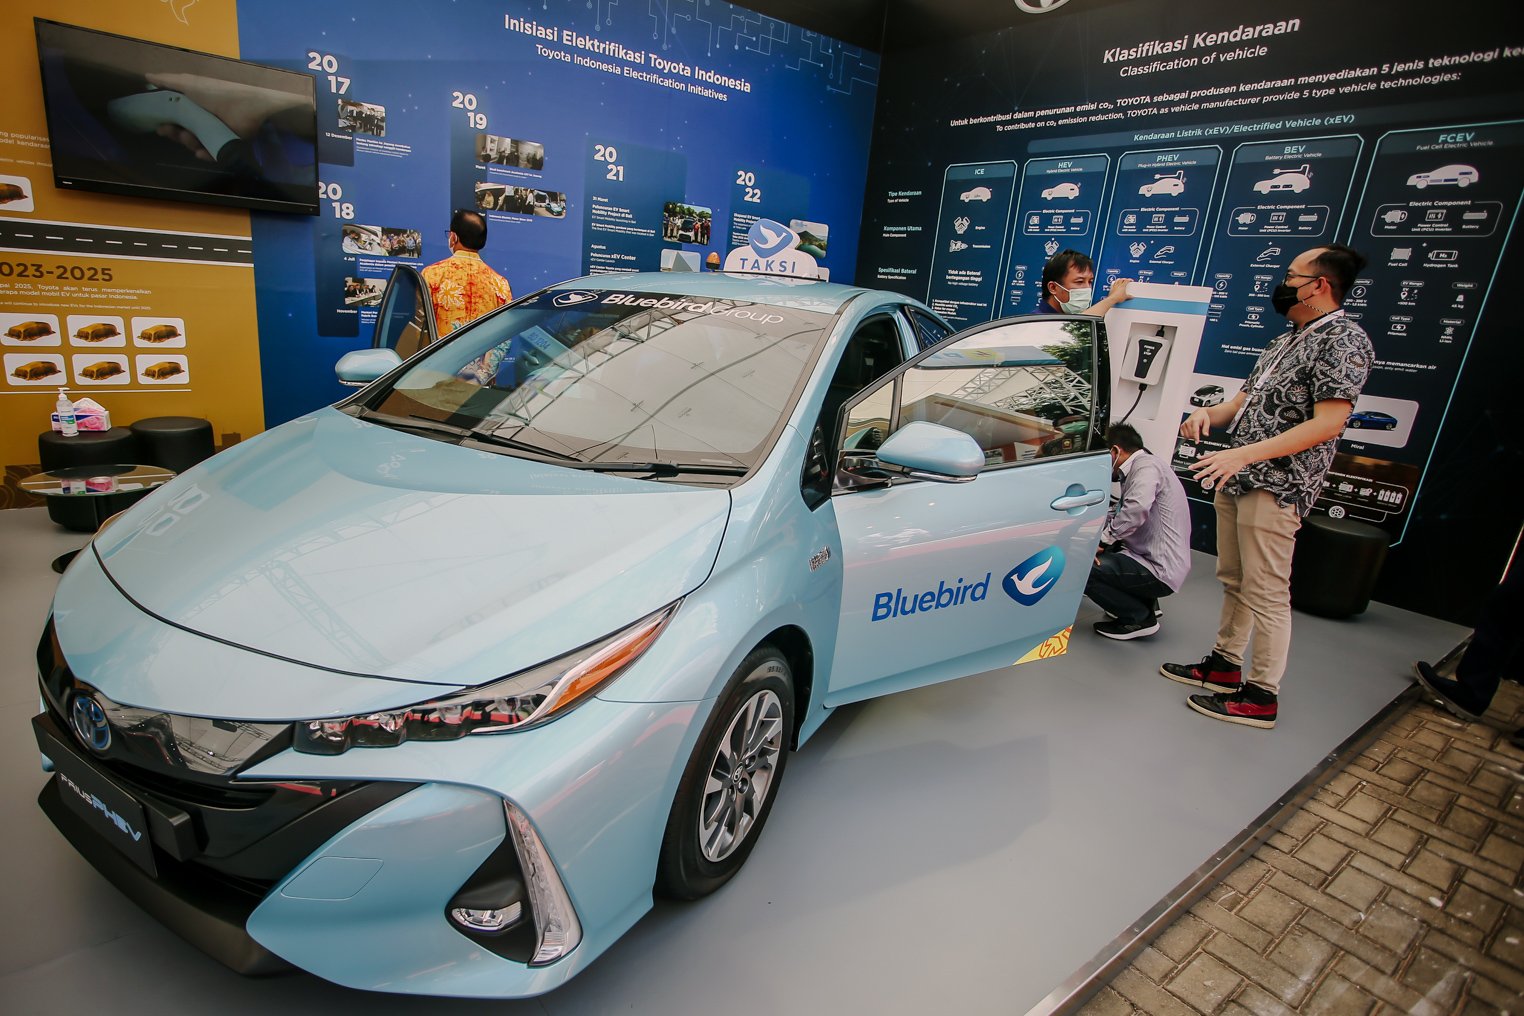 Pengunjung melihat armada angkutan umum Blue Bird yang menggunakan Toyota Prius Plug-In Hybrid Electric Vehicle (PHEV) di ajang Pameran Indonesia Electric Motor Show (IEMS) 2021 di Puspiptek, Serpong, Tangerang Selatan, Banten, Kamis (25/11/2021). Emiten transportasi PT Blue Bird Tbk (BIRD) rencananya hingga tahun 2025 akan menghadirkan taksi listrik sebanyak 10 ribu unit sebagai kendaraan umum ramah lingkungan. ANTARA FOTO/Muhammad Iqbal/wsj.